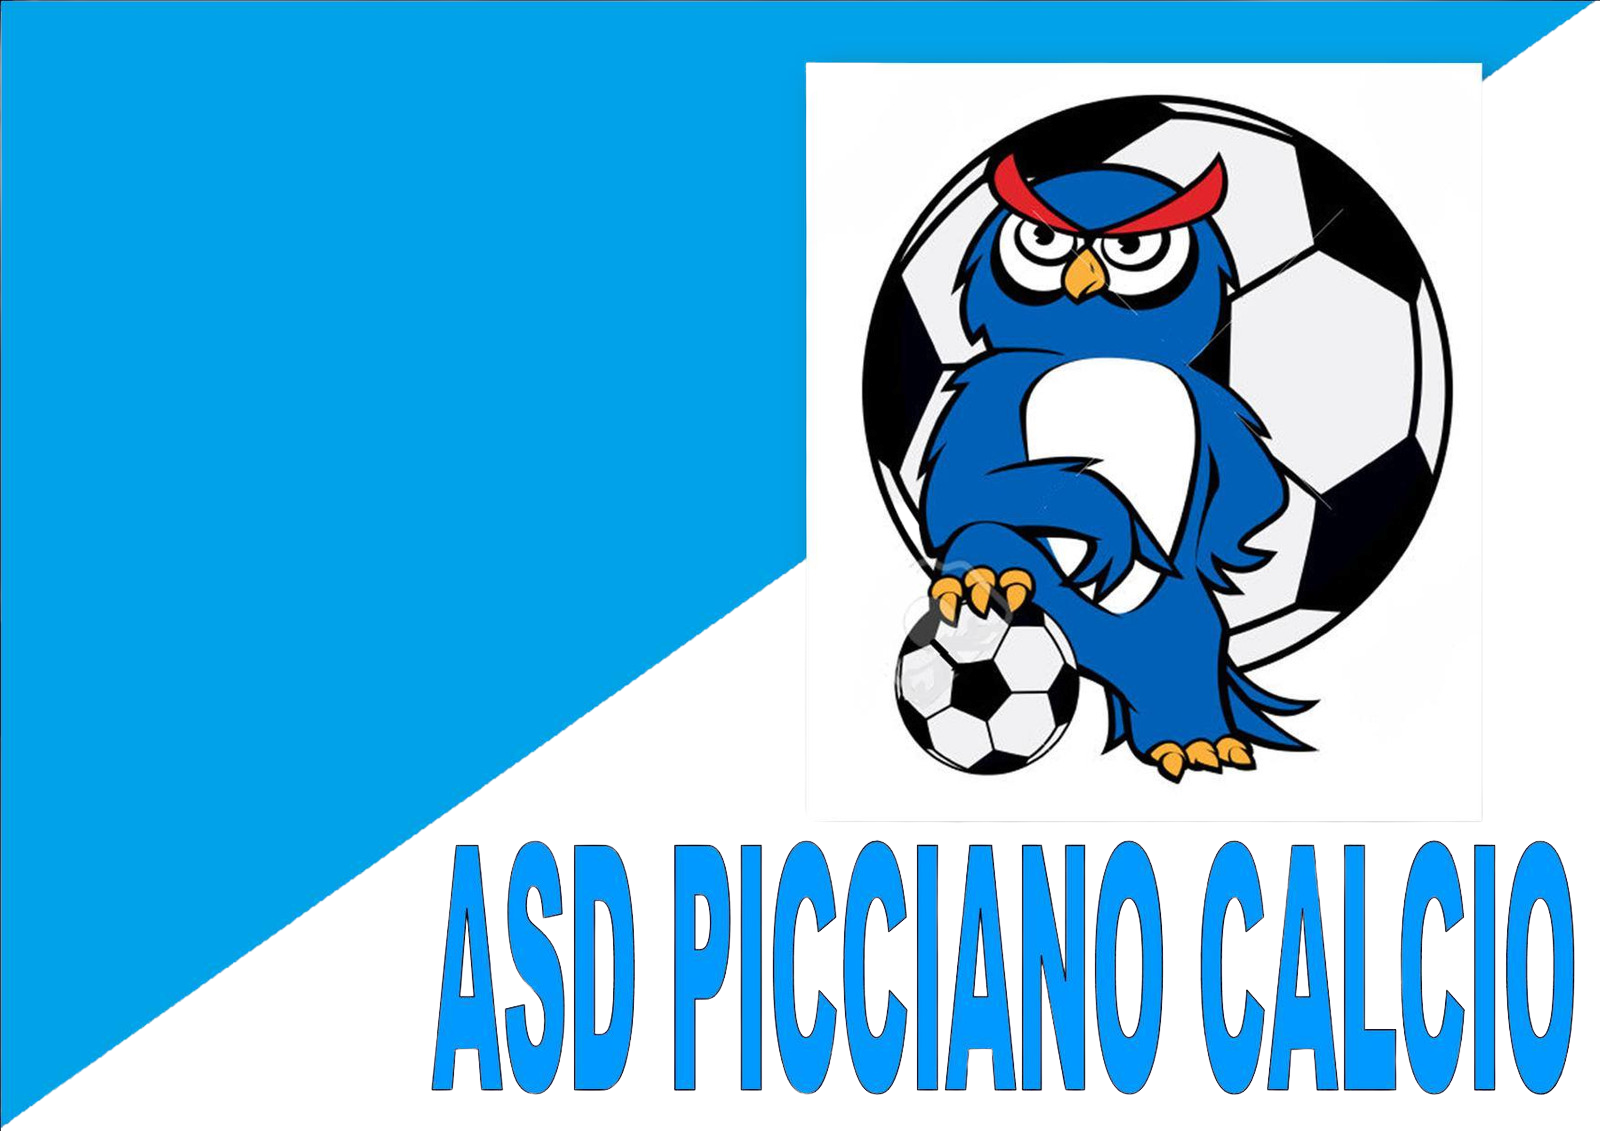 ASD Picciano Calcio